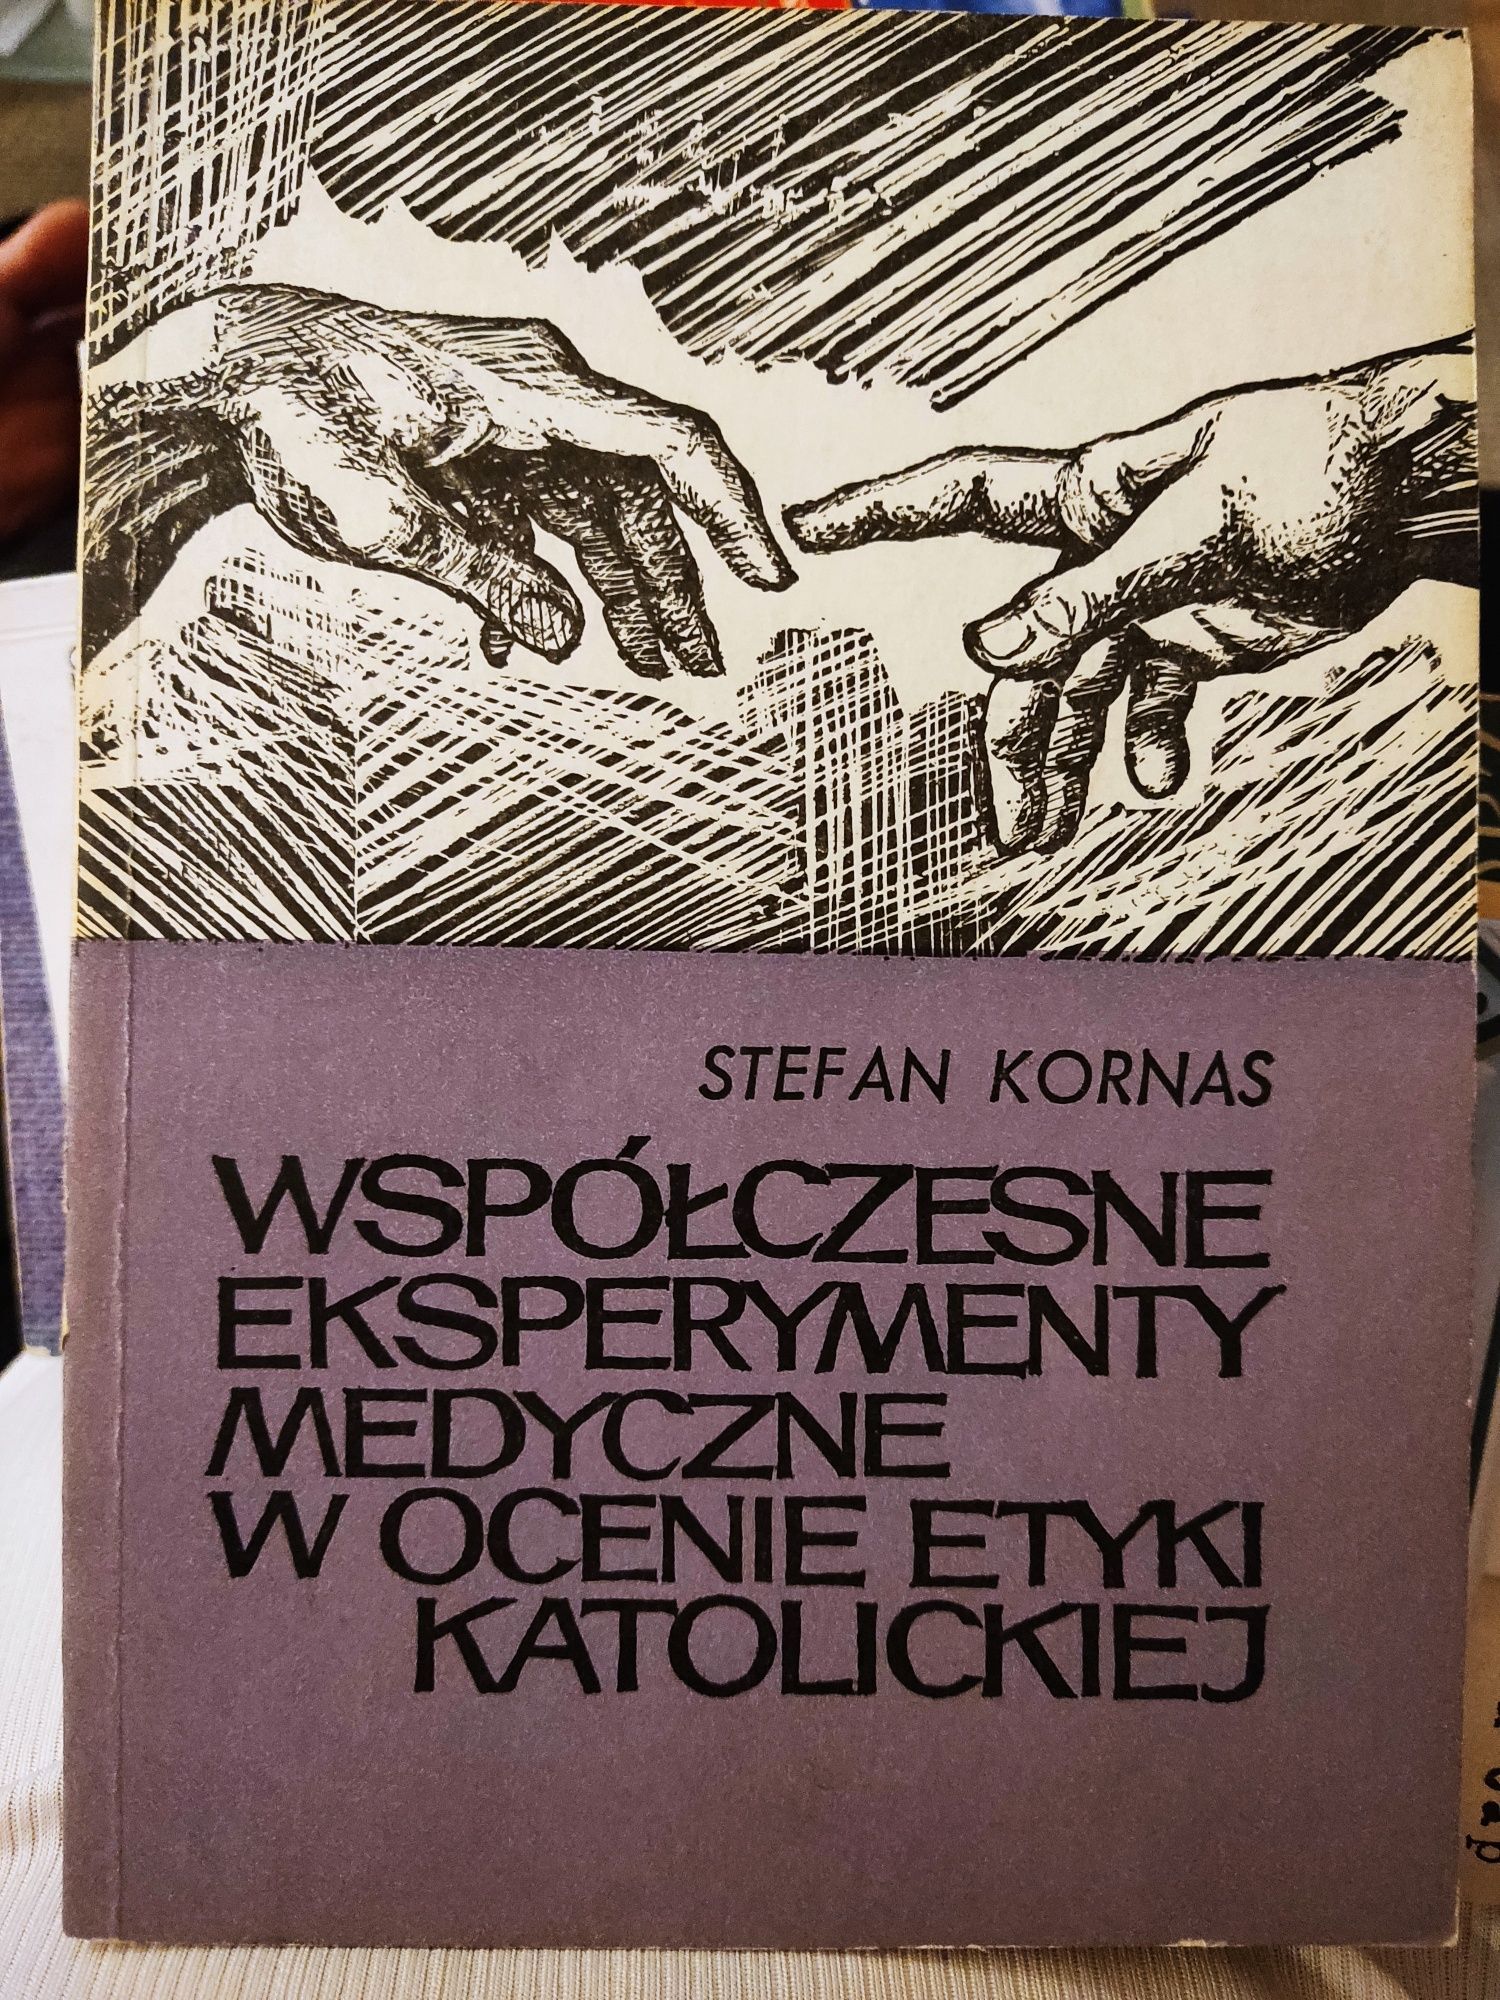 Stefan Kornas- współczesne eksperymenty medyczne w ocenie etyki katol